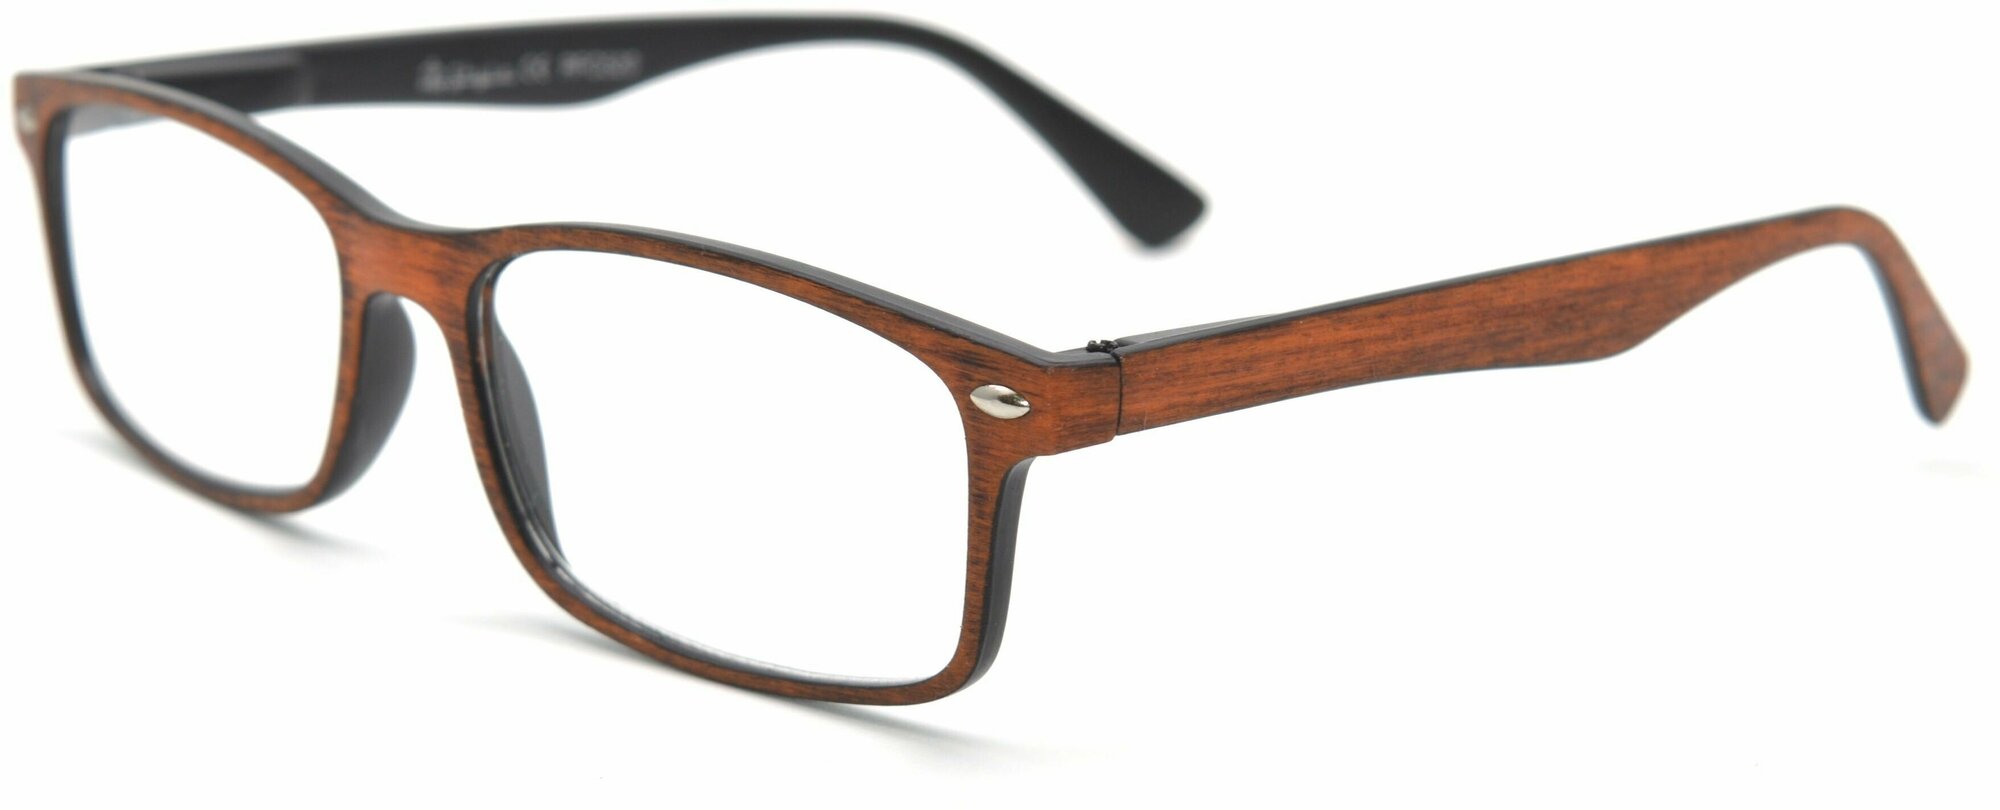 Очки готовые RFC 520 +4.00 (пластик) коричневый / очки для зрения +4.00